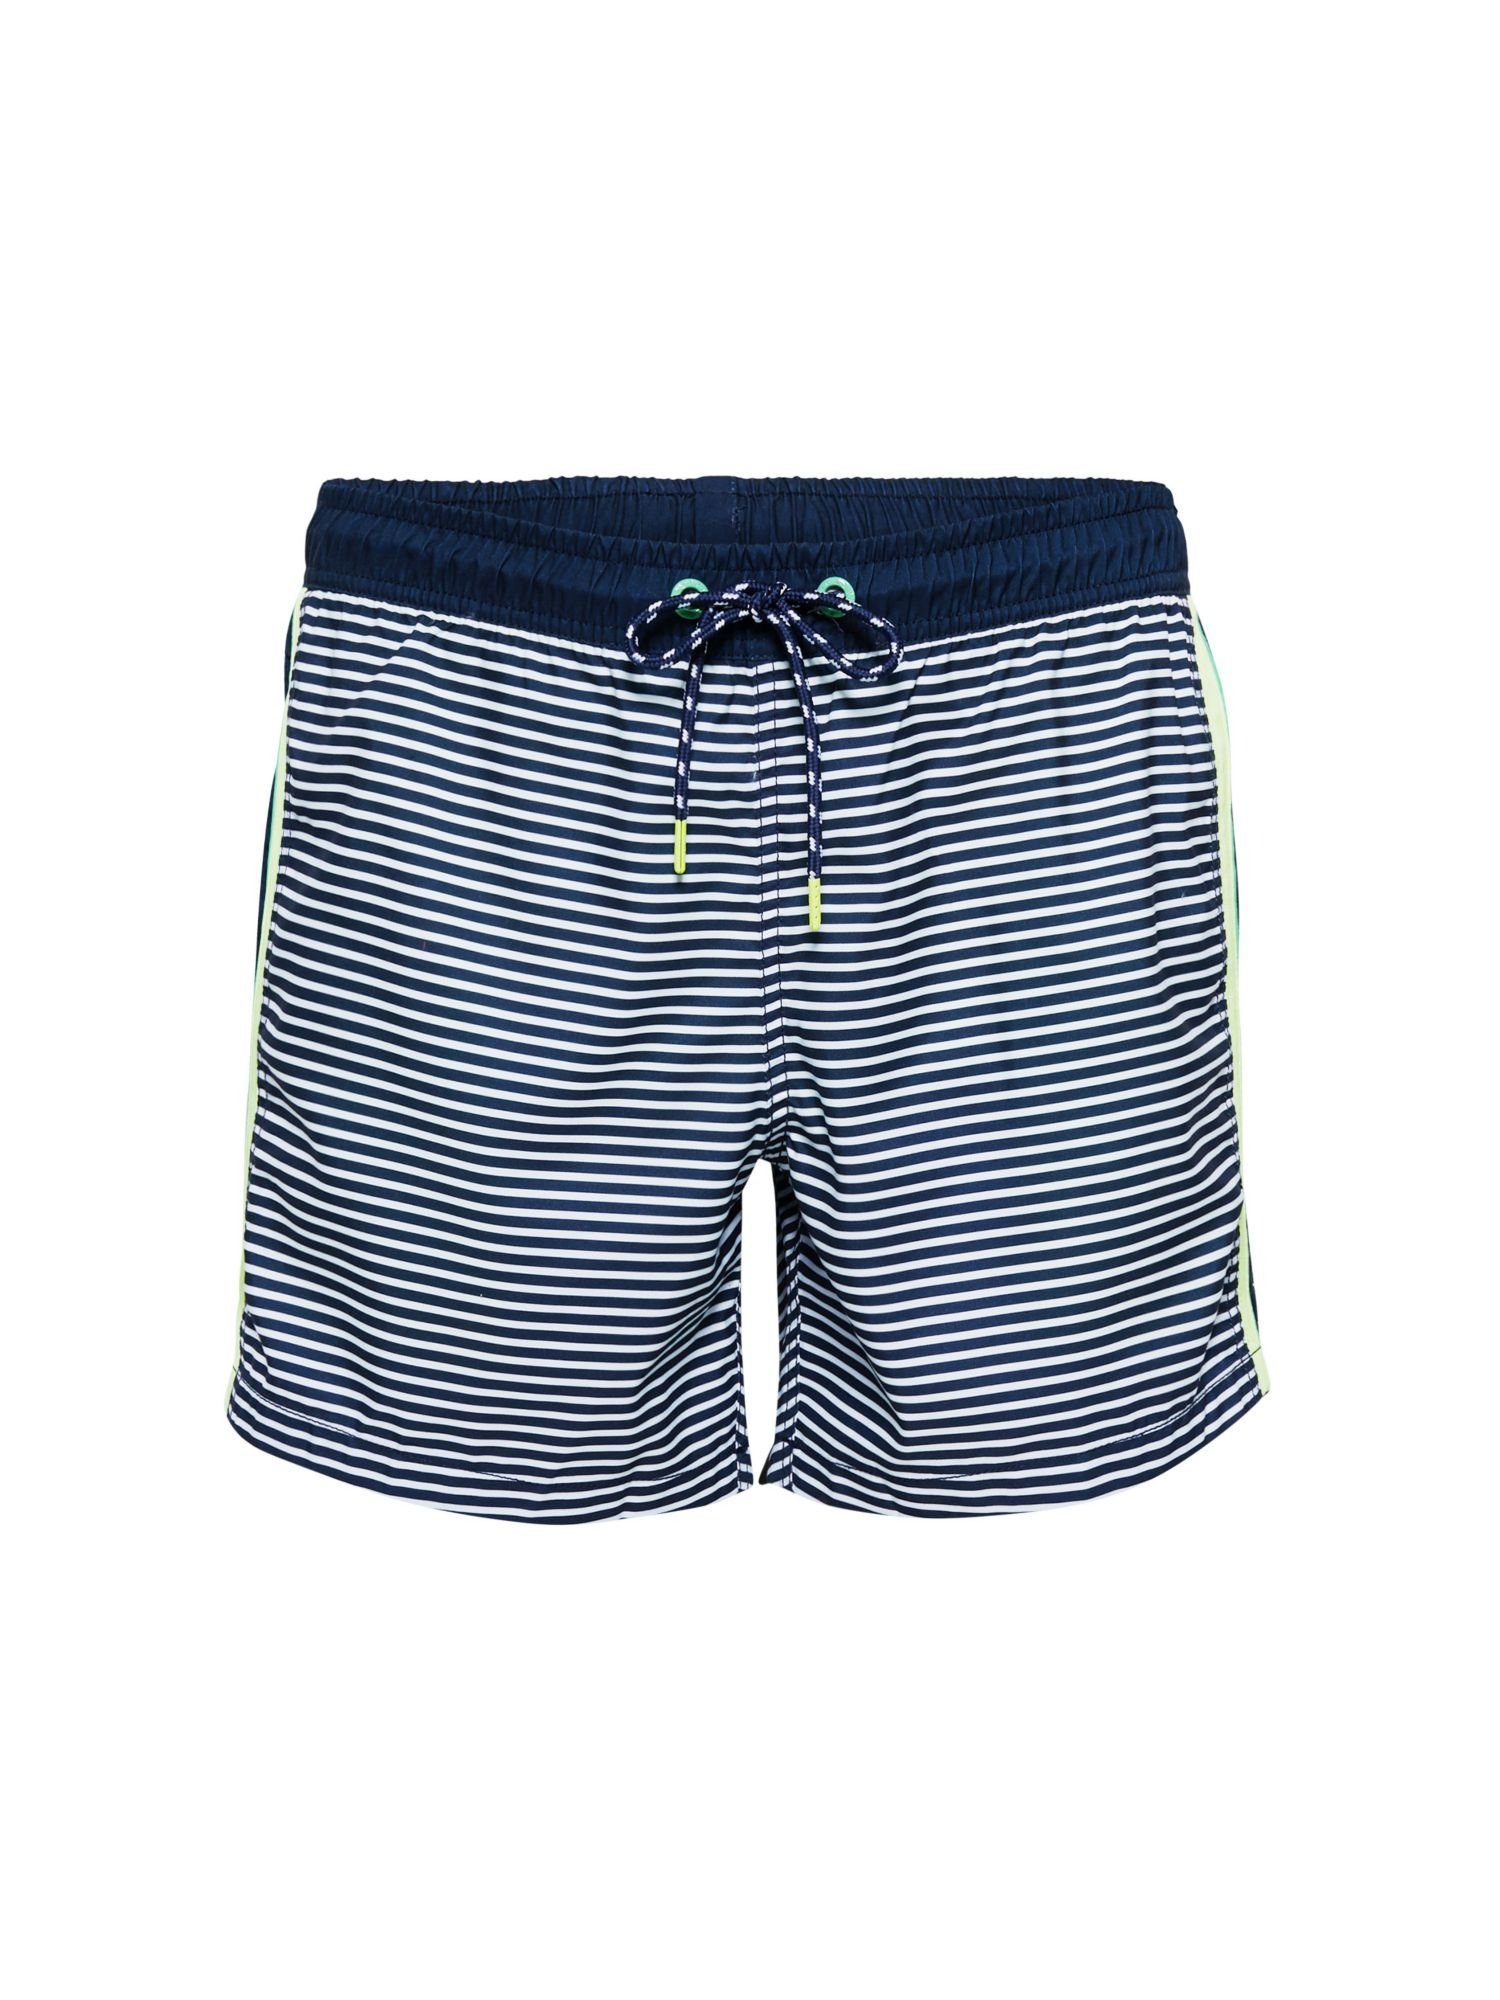 Esprit Badeshorts »Bade-Shorts mit Streifen und Neon-Details« online kaufen  | OTTO